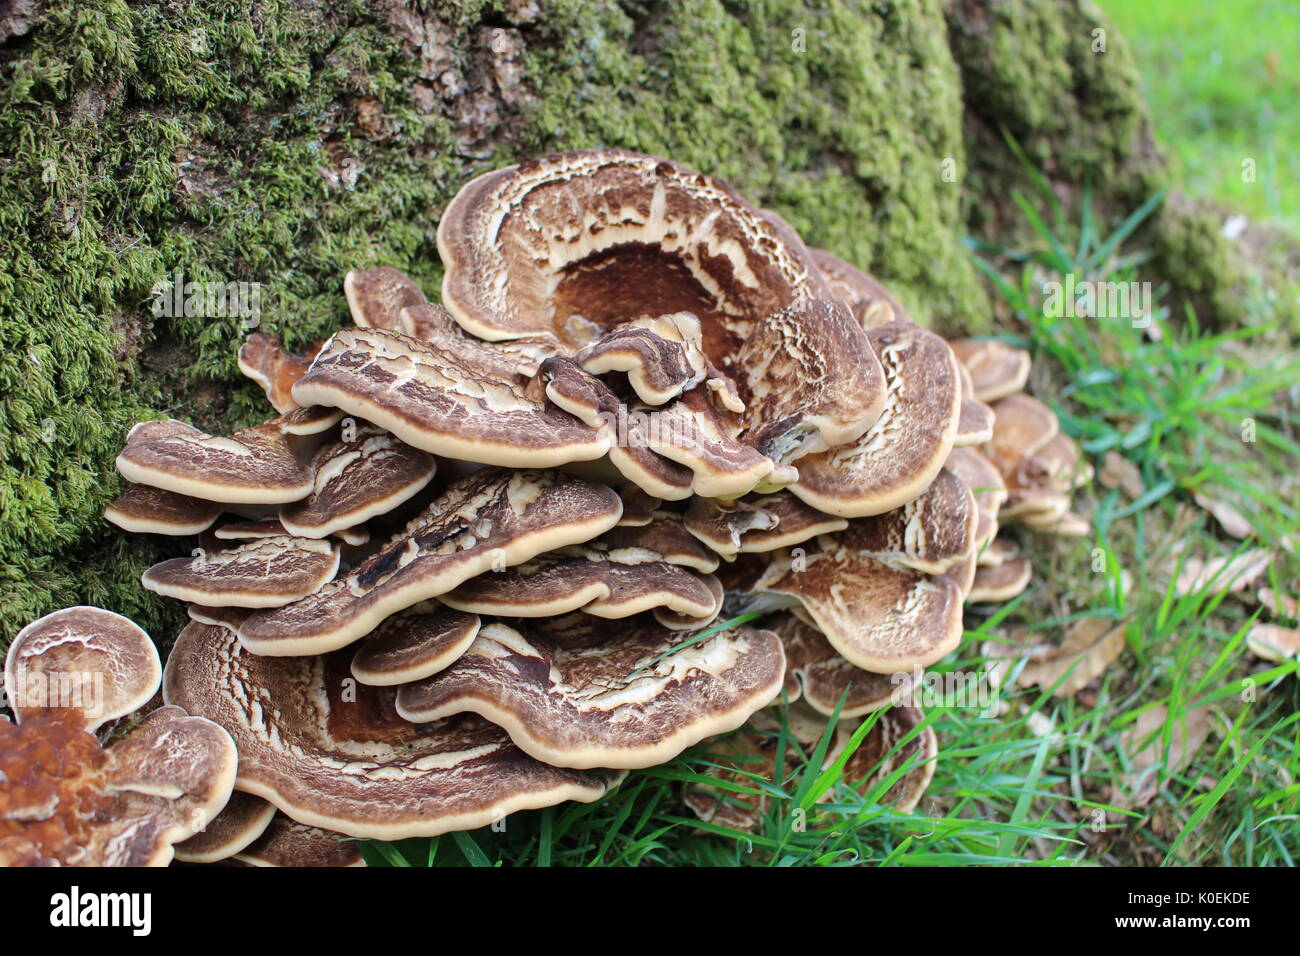 Mushrooms at base of tree, Llanddew, Wales Stock Photo